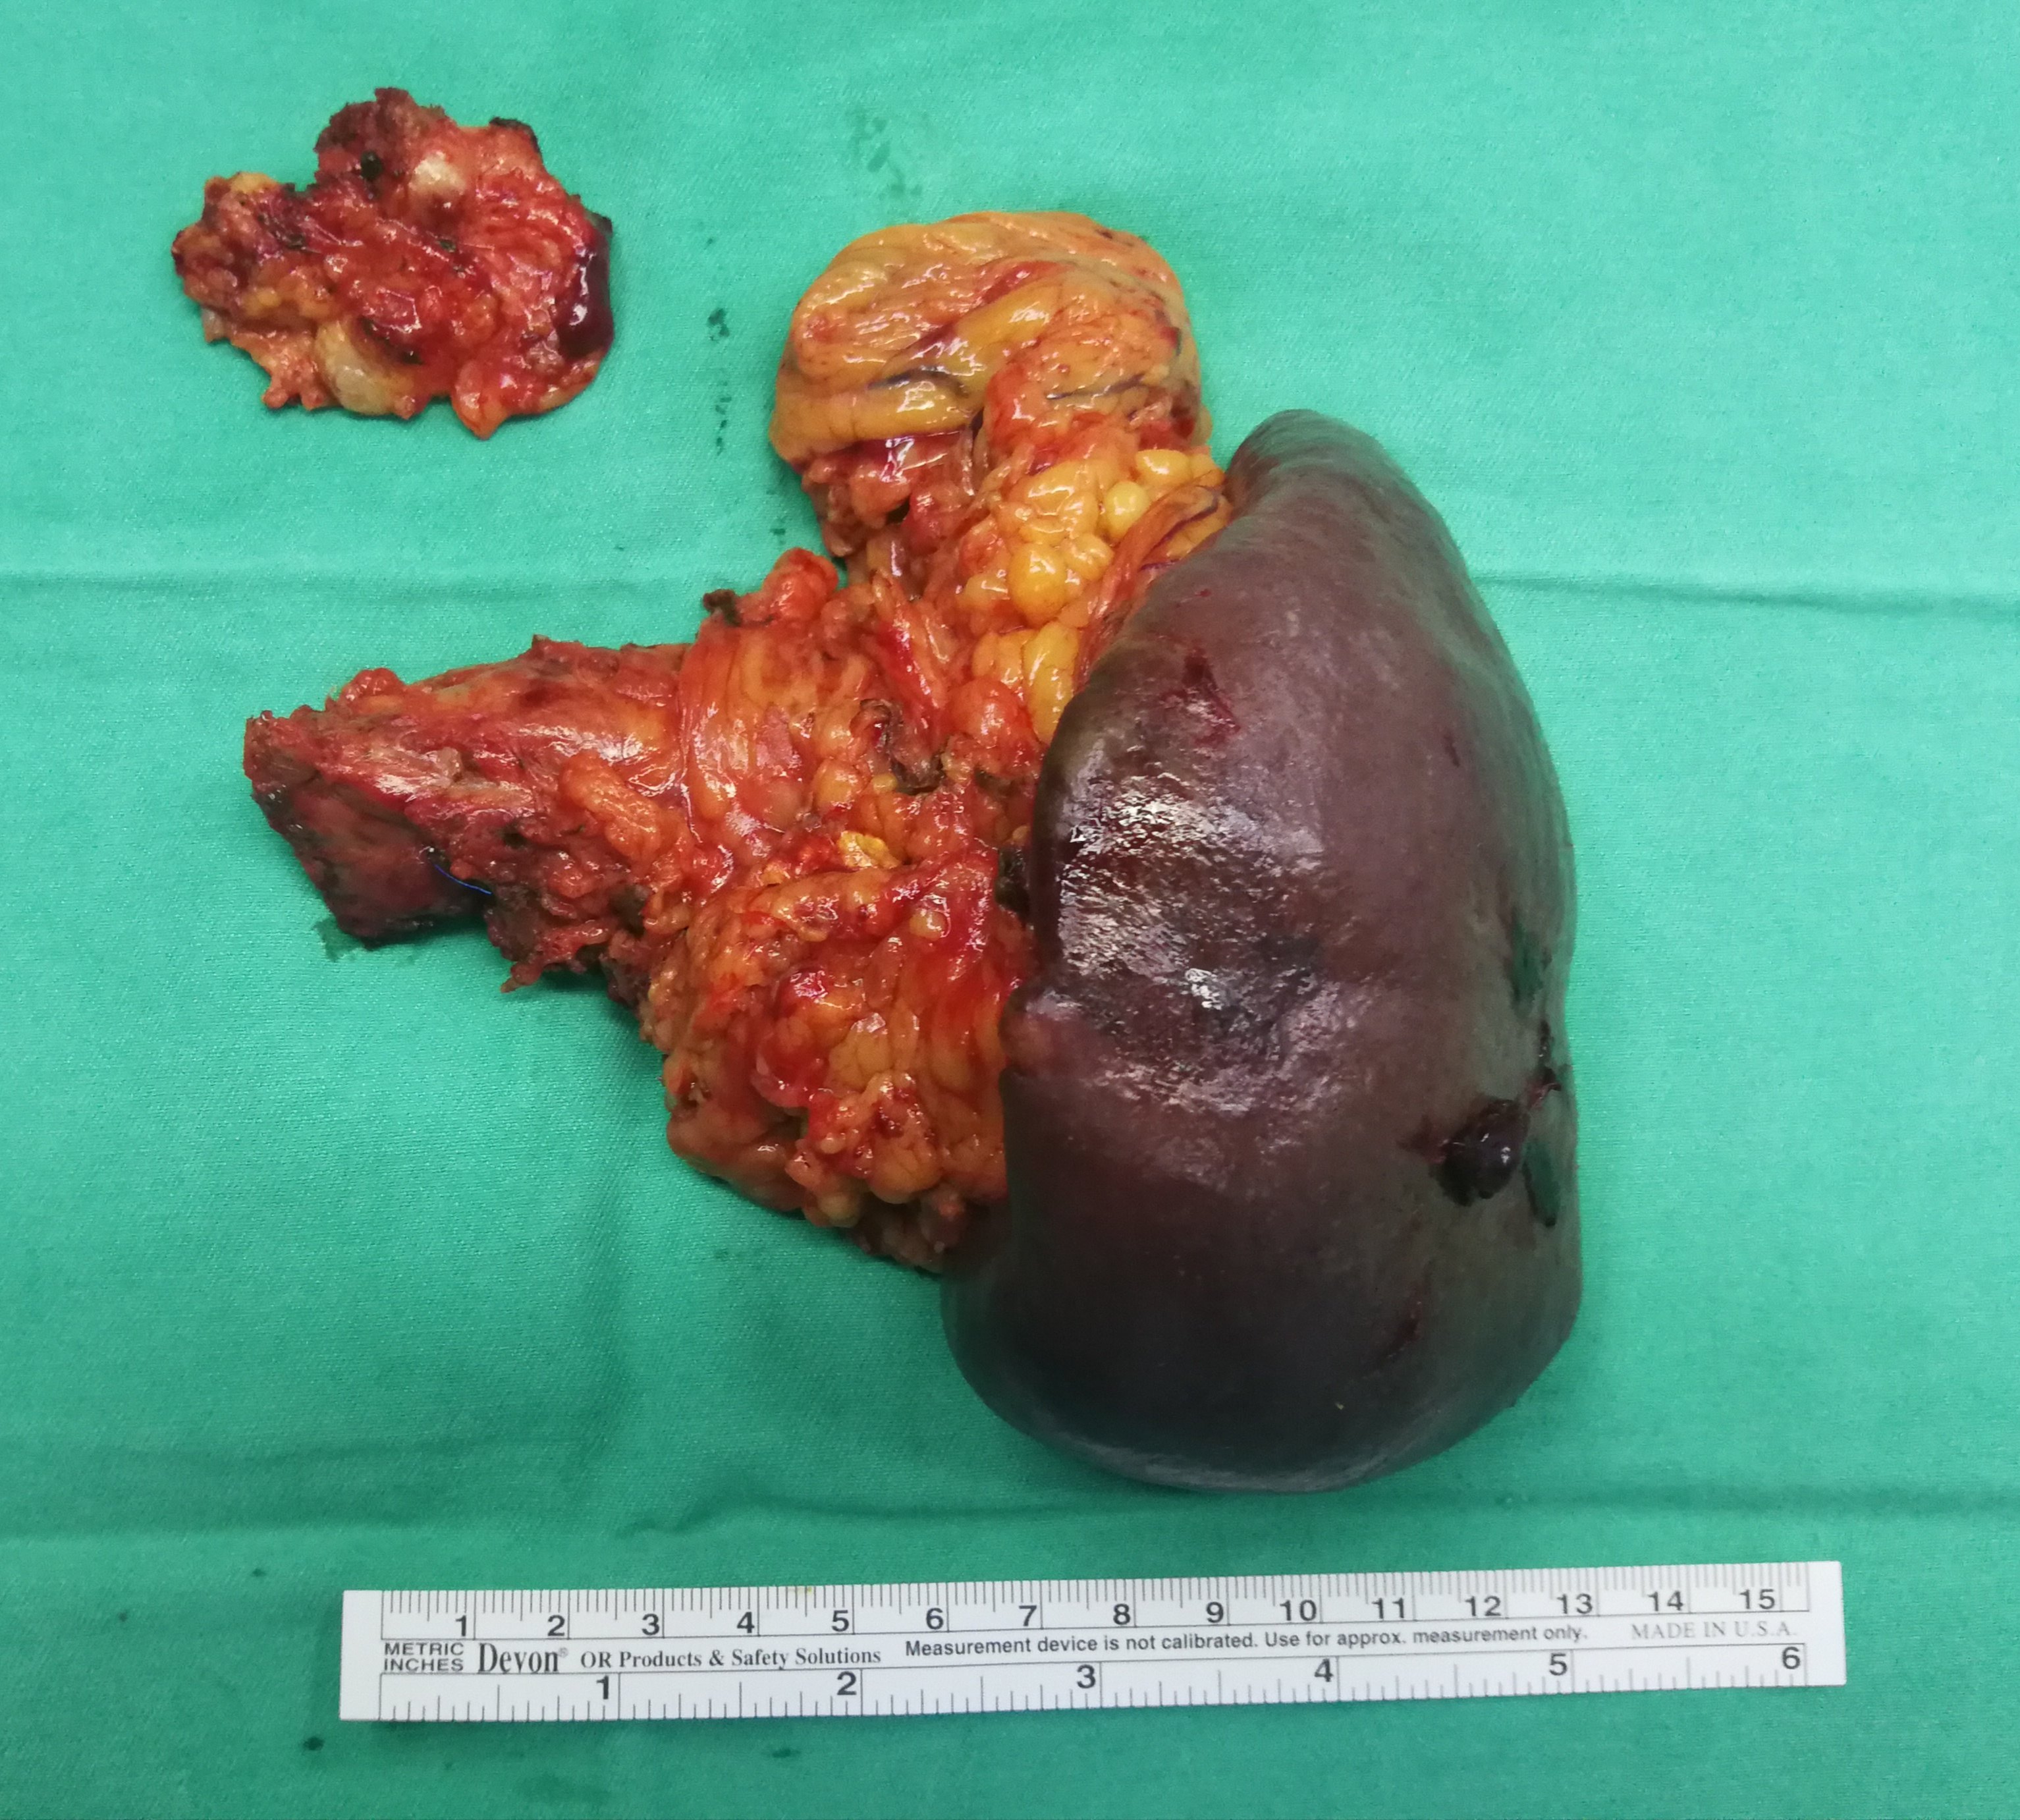 胰尾癌晚期图片